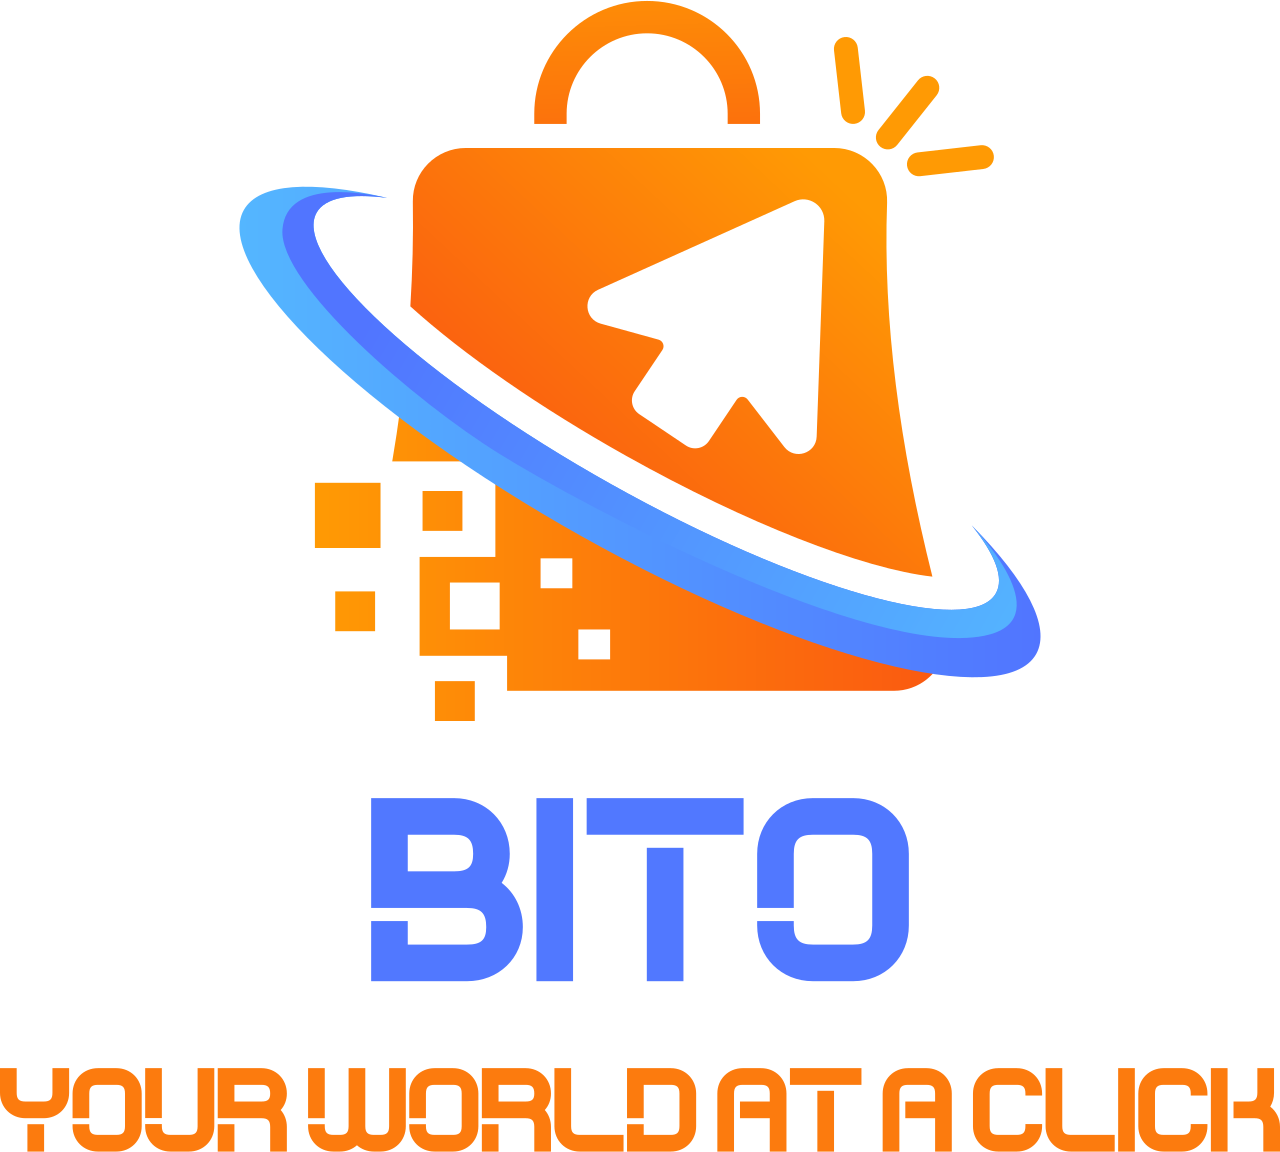 BITO's logo